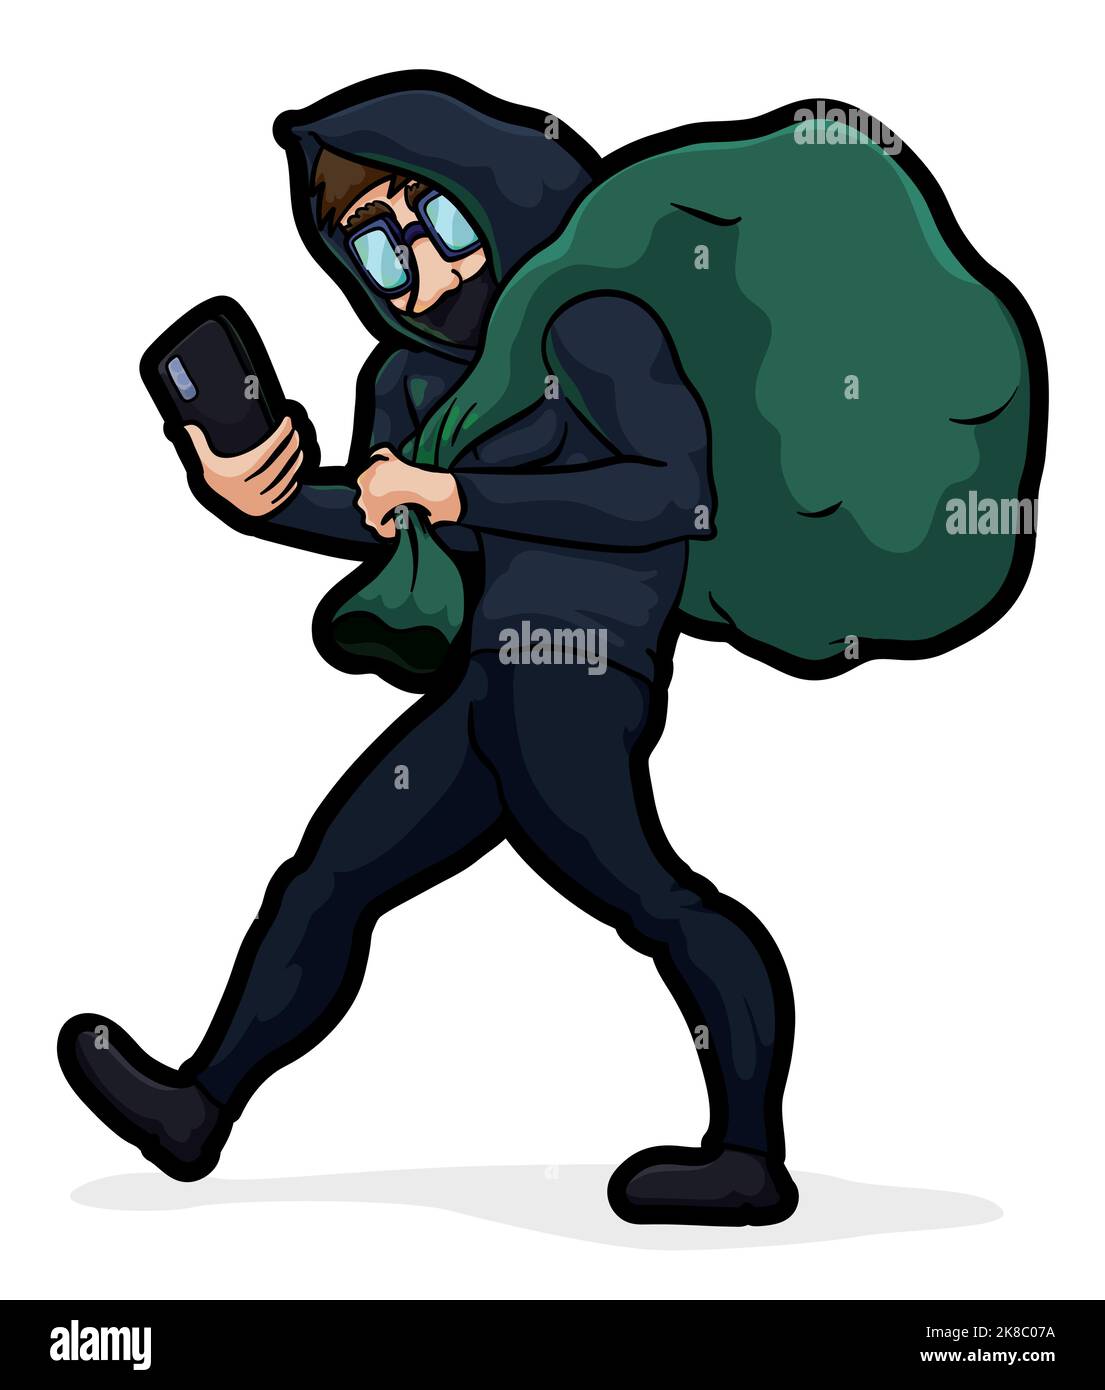 El ladrón o ladrón huye con un gran saco. ladrón en ropa oscura con bolsa  llena sobre fondo de pared de ladrillo. peligroso criminal enmascarado.  ilustración con personaje de dibujos animados.